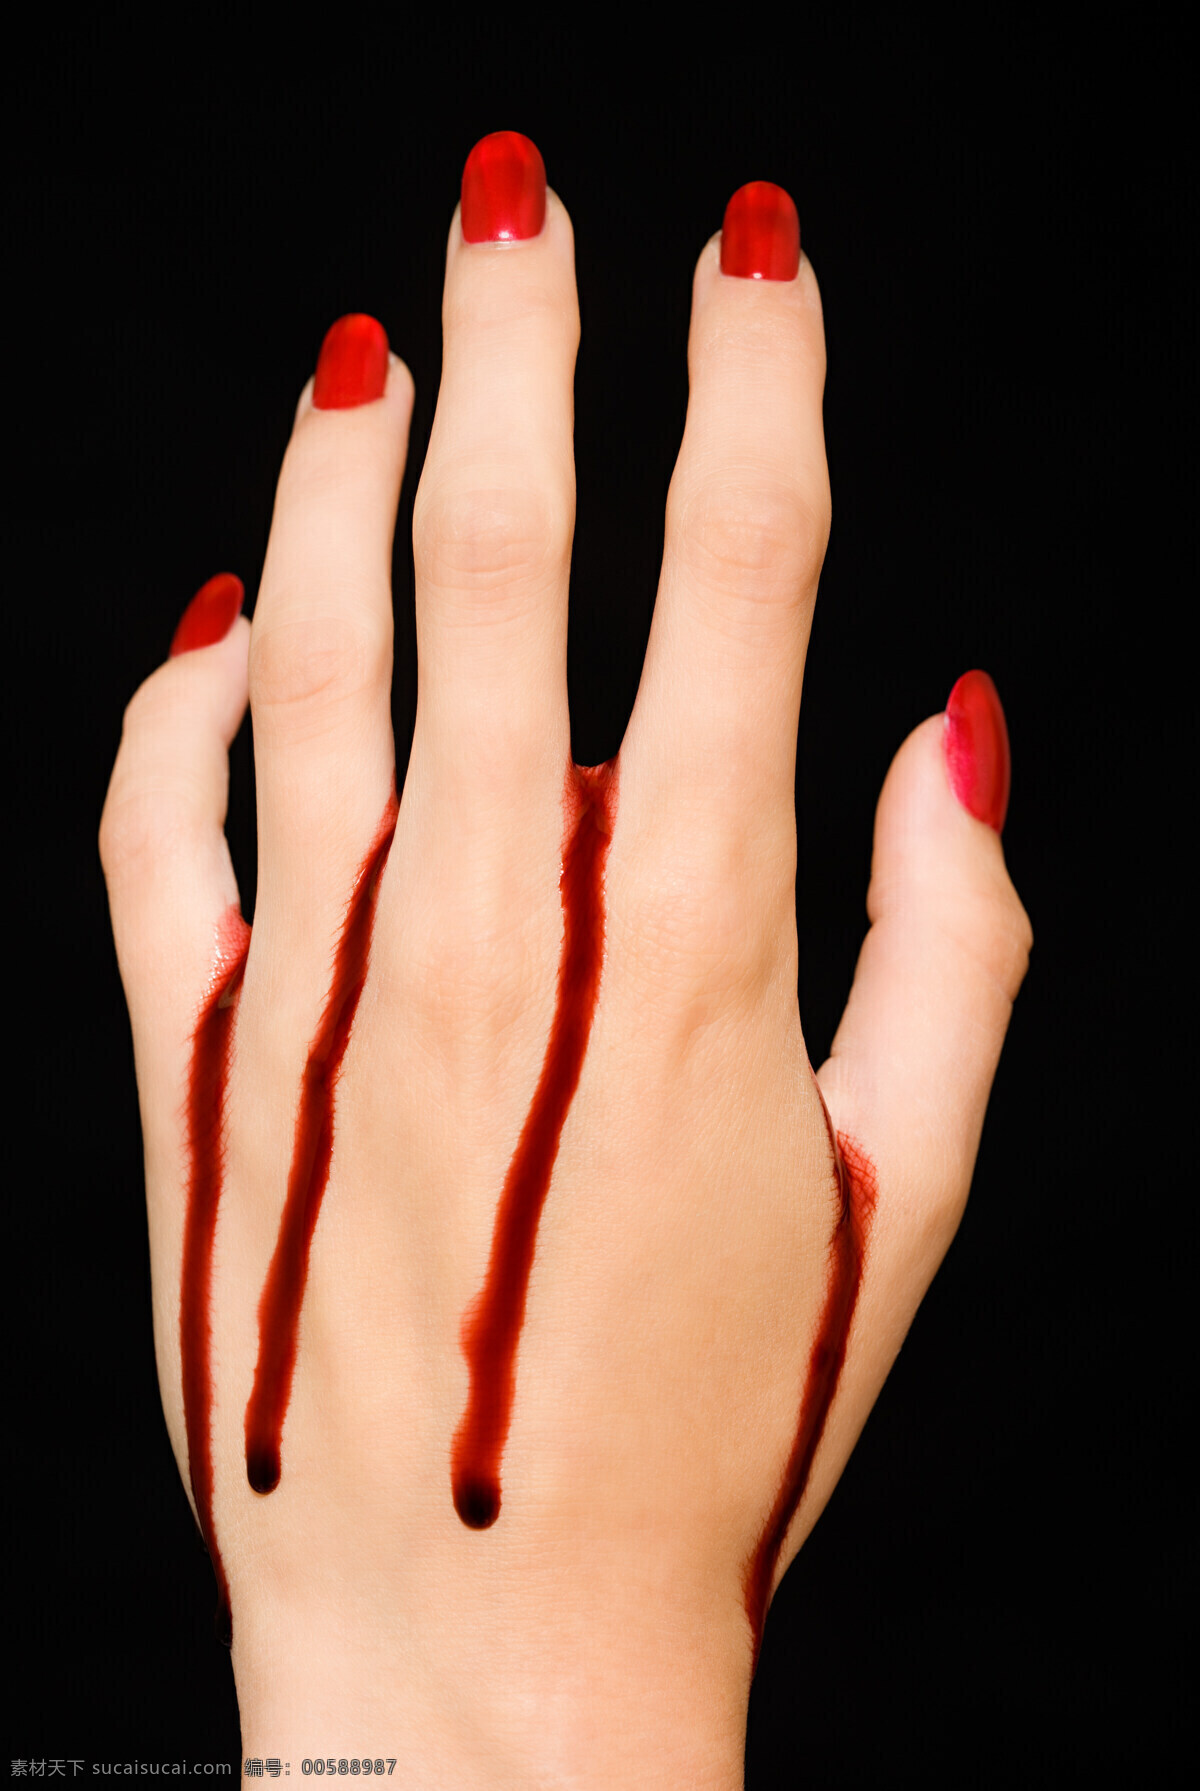 红 指甲 滴 血 手背 手特写 流血 血液 滴血 红指甲 美甲 肤质 白皙 创意 高清摄影 高清大图 人体器官图 人物图片